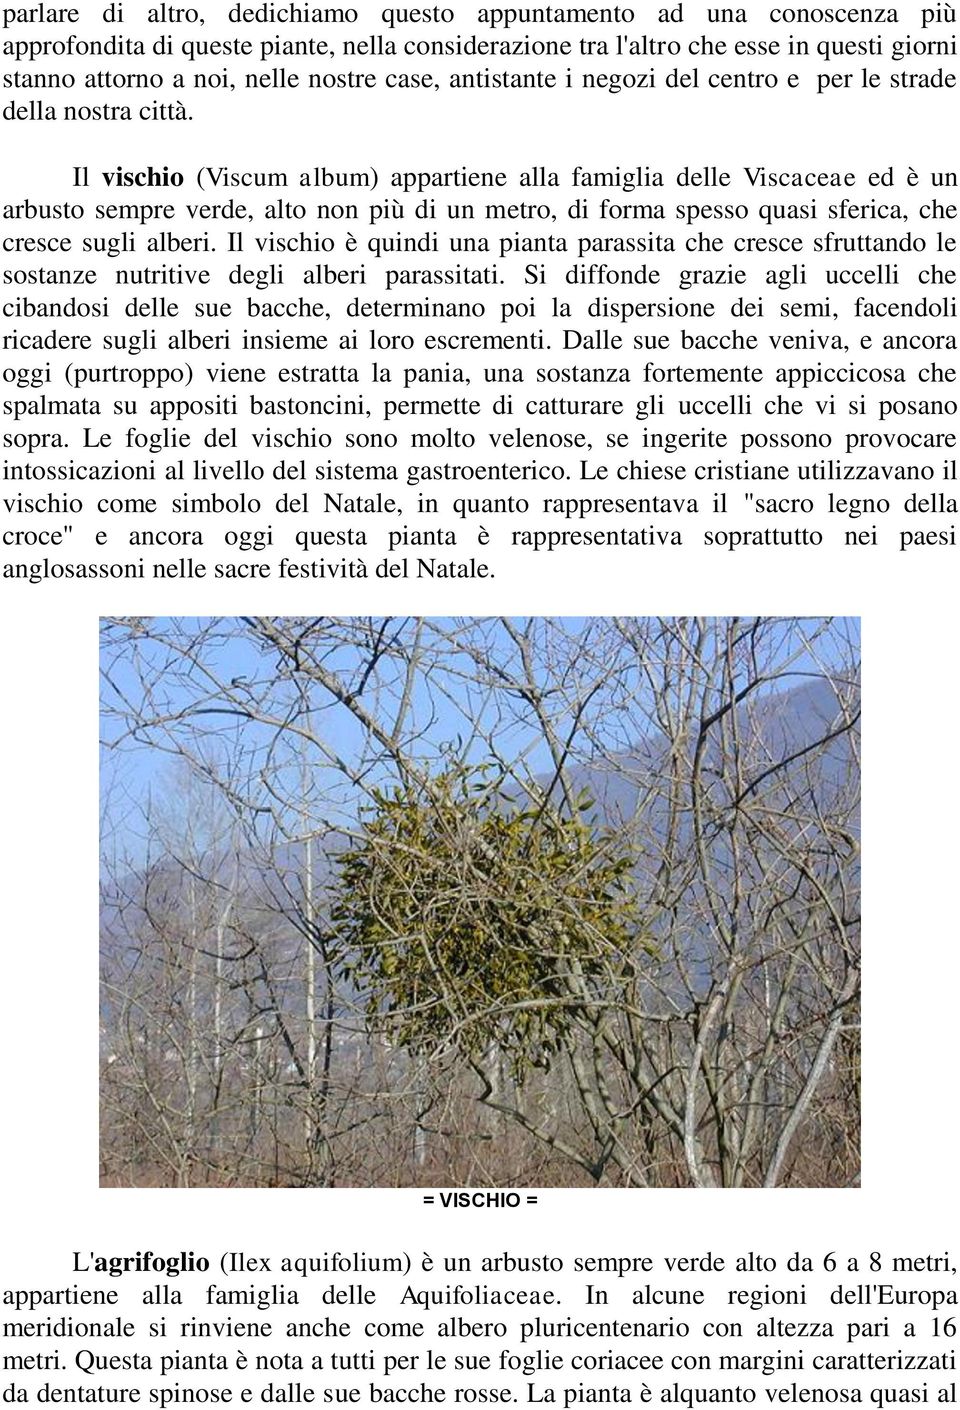 Il vischio (Viscum album) appartiene alla famiglia delle Viscaceae ed è un arbusto sempre verde, alto non più di un metro, di forma spesso quasi sferica, che cresce sugli alberi.